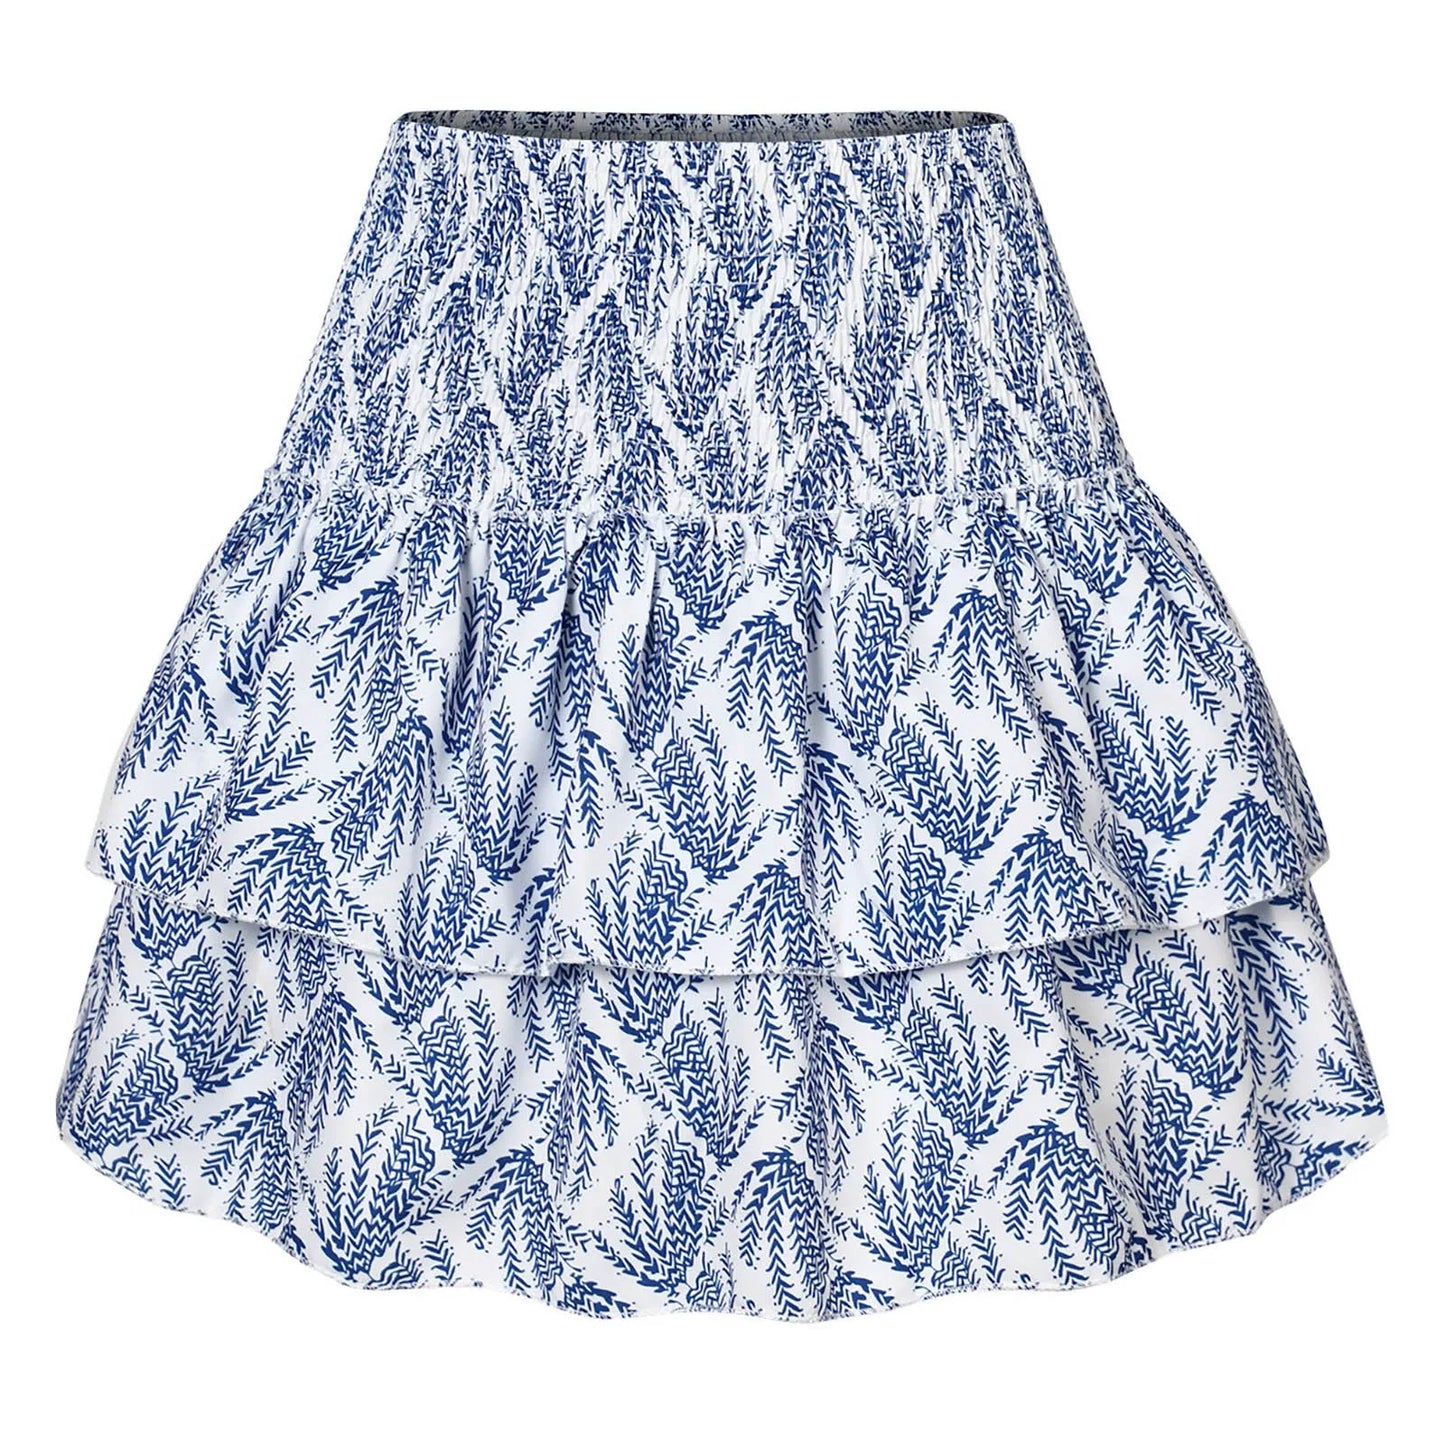 Women Boho Skirt High Waist Draped Ladies A-Line Short Skirt Layer Ruffles Floral Print Summer Skirt Clothing Faldas